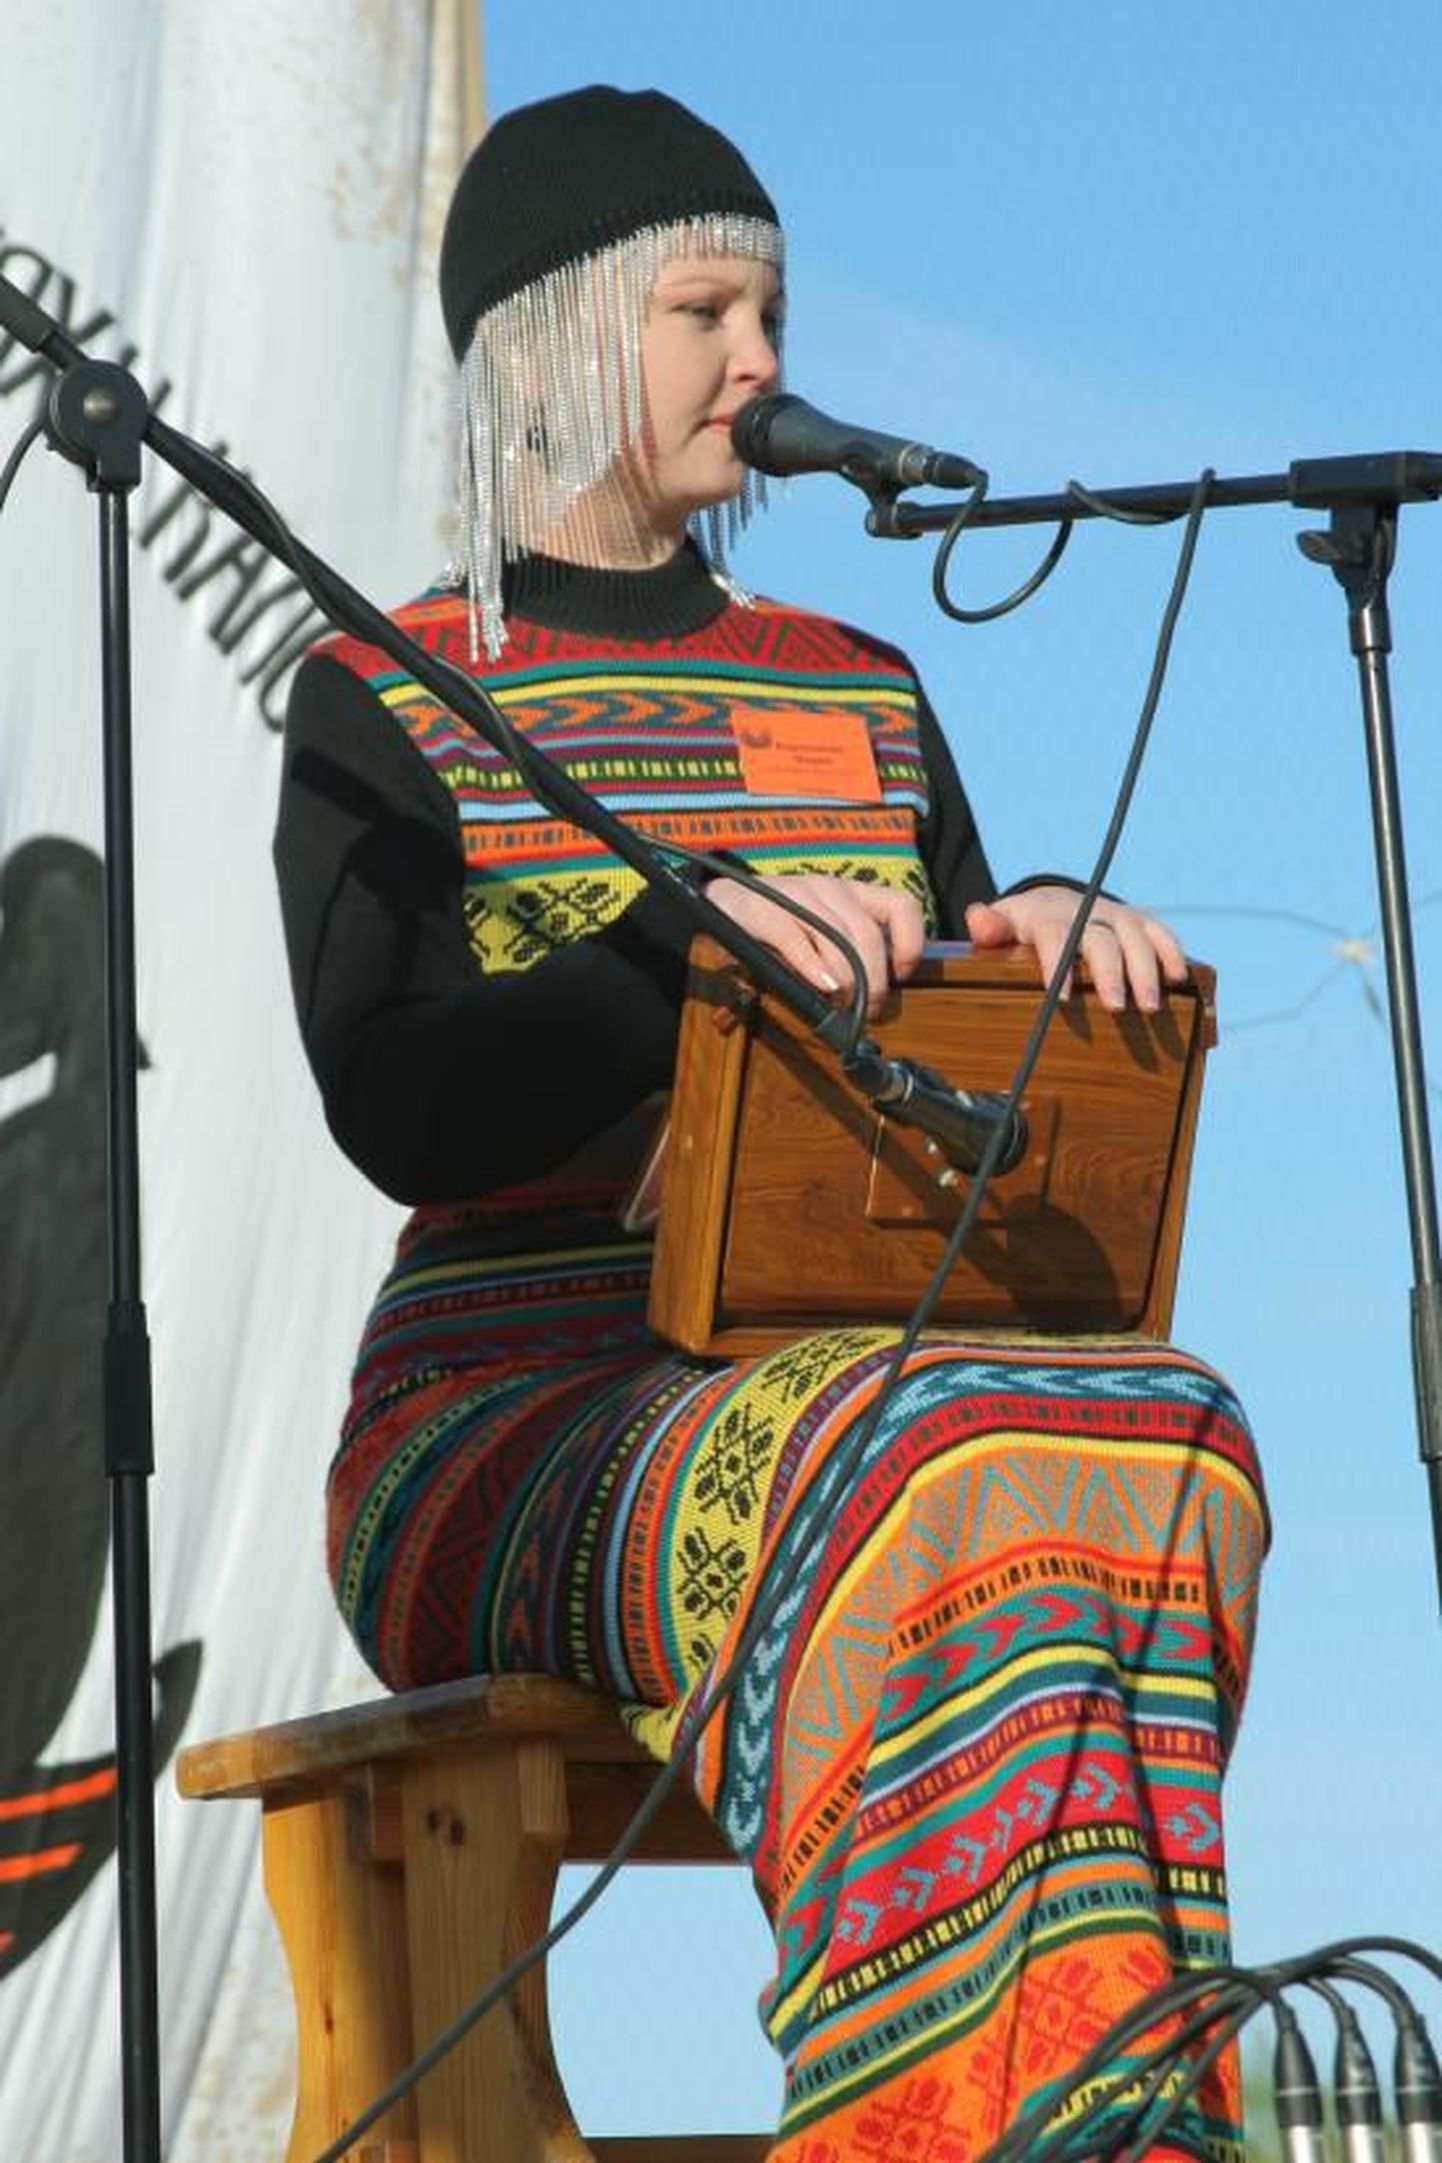 Sangaste rukki päeva pärimusmuusika kontserdi peaesineja on ka Viljandi pärimusmuusika festivalil esinev Maria Korepanova Udmurdimaalt.